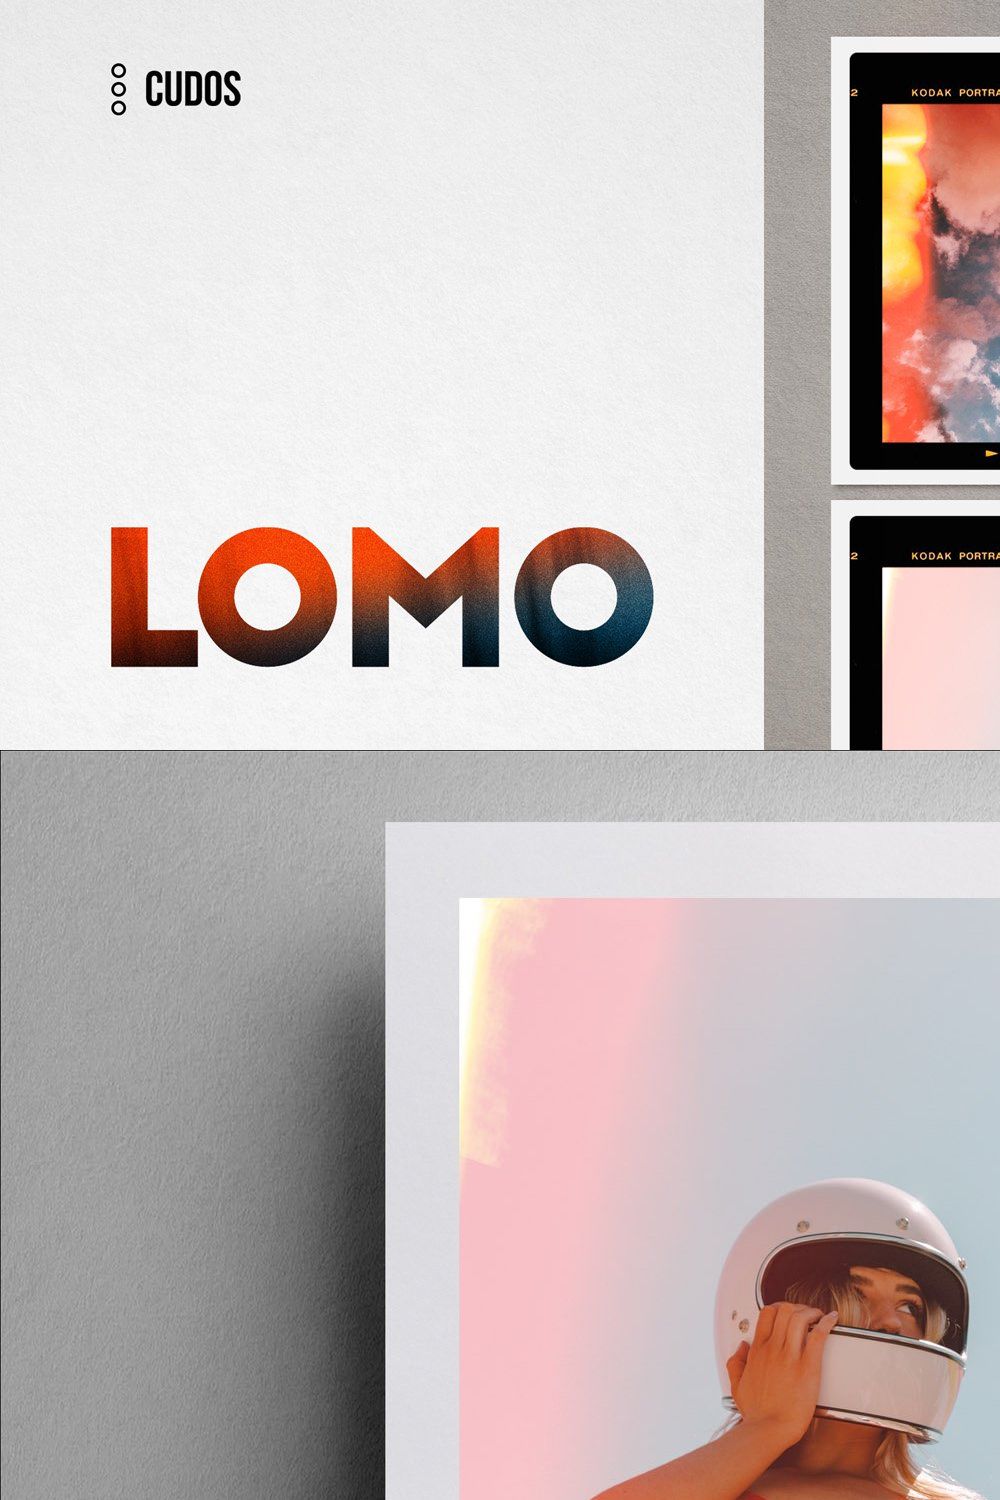 LOMO | 100+ Analog Light Leaks & FX pinterest preview image.